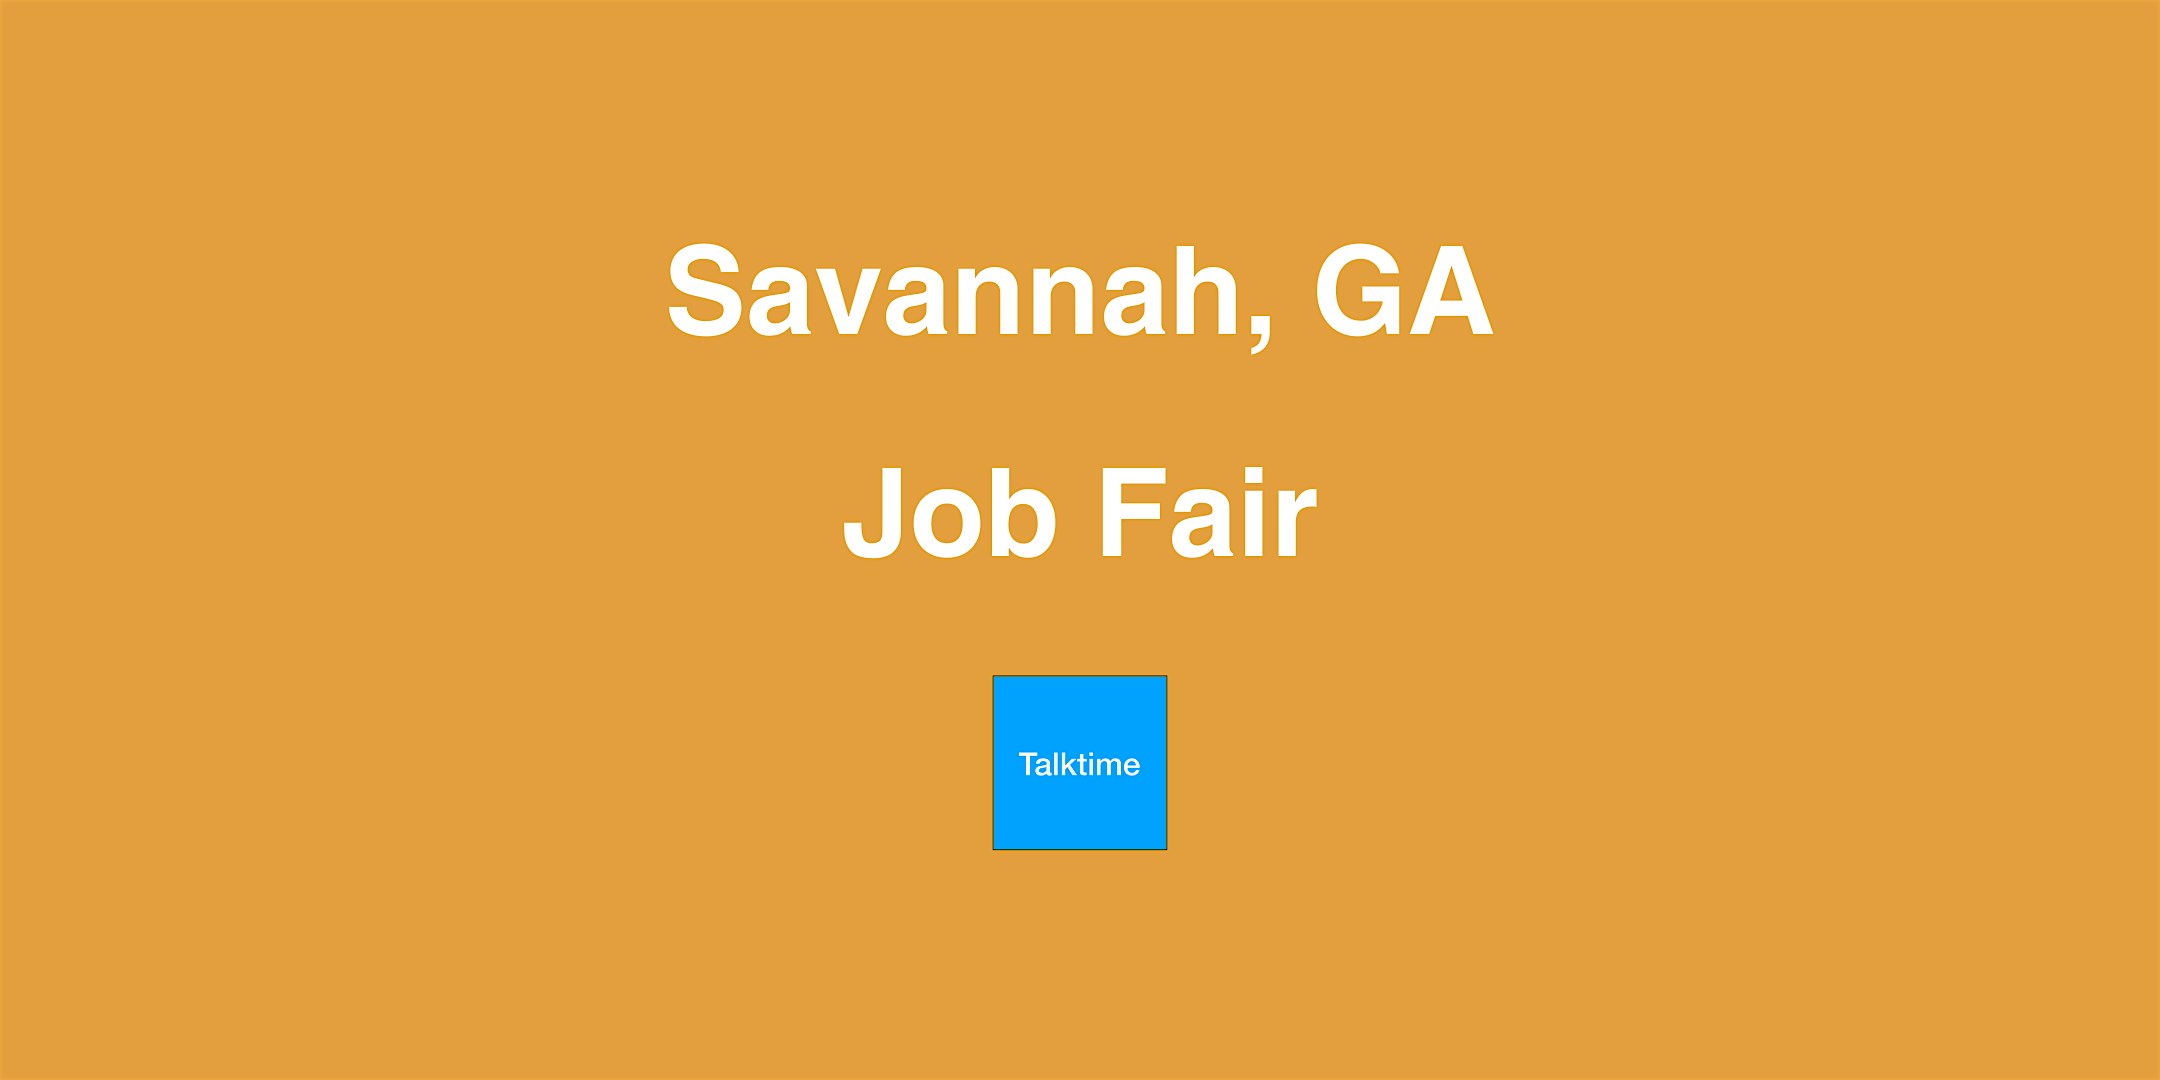 Job Fair - Savannah